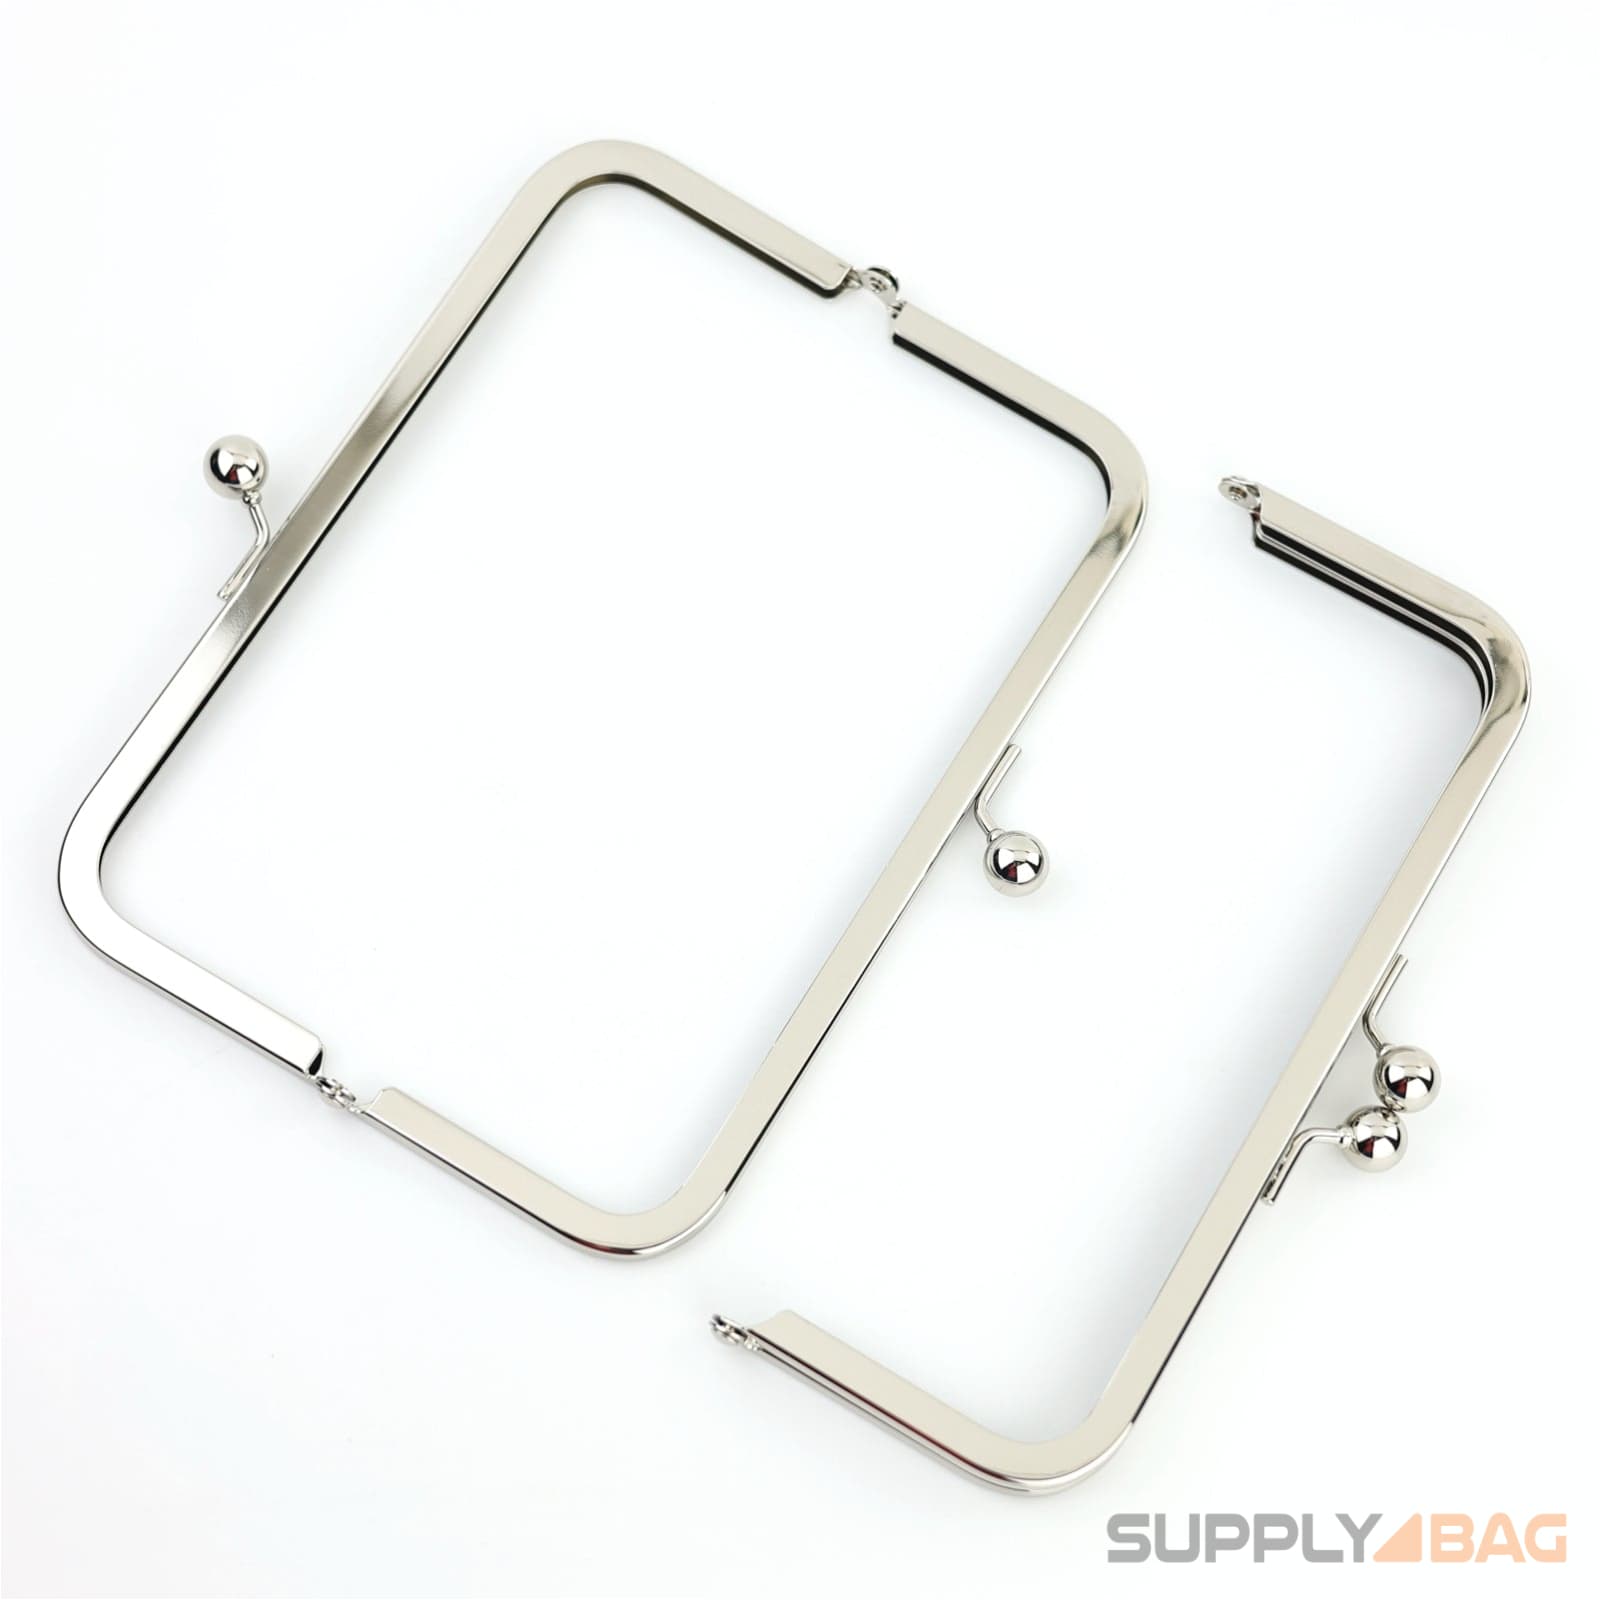 8 x 3 inch - kisslock ball clasp - silver metal purse frame